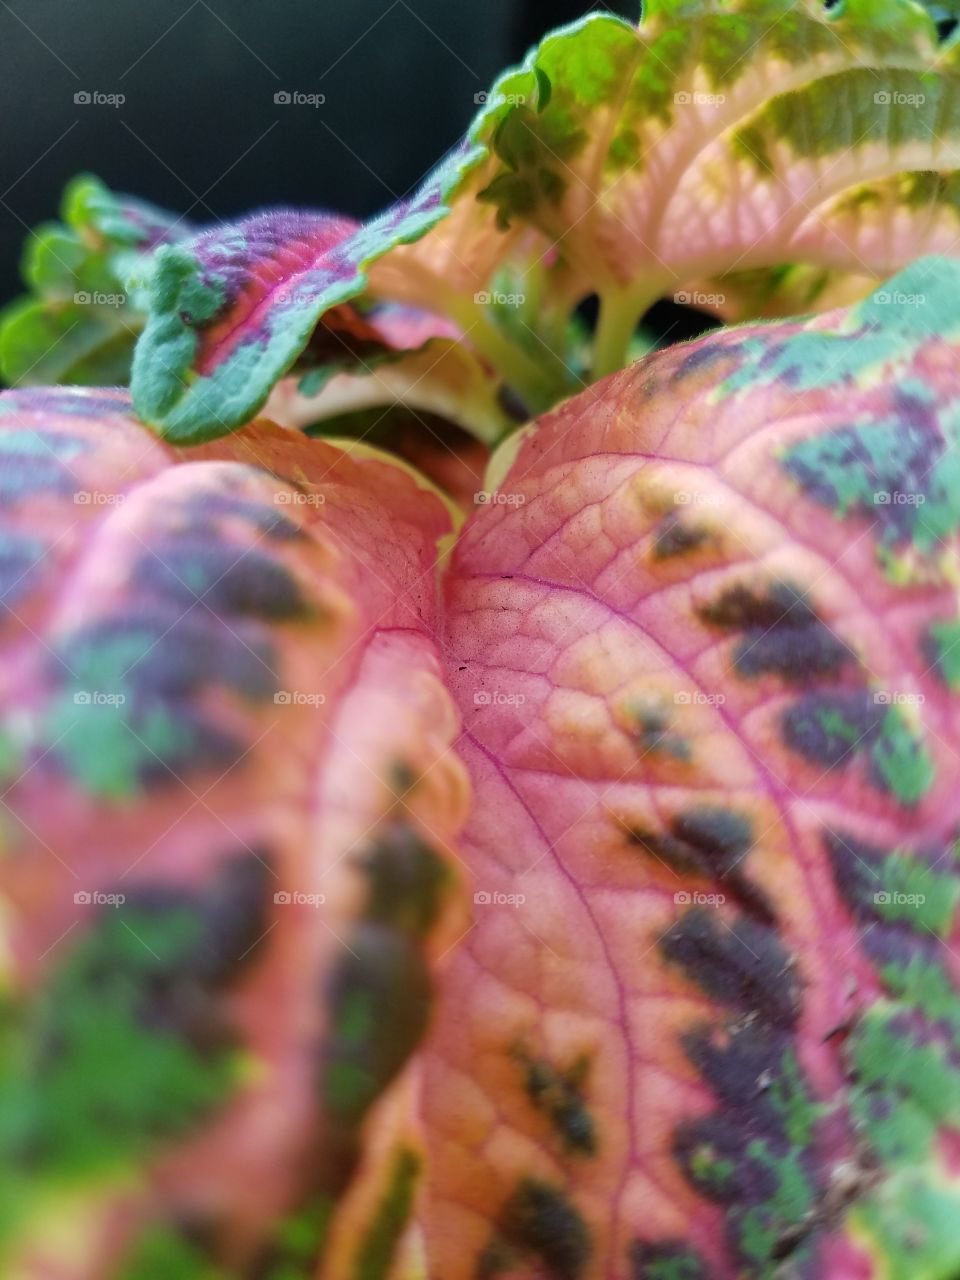 Large leaf close up.